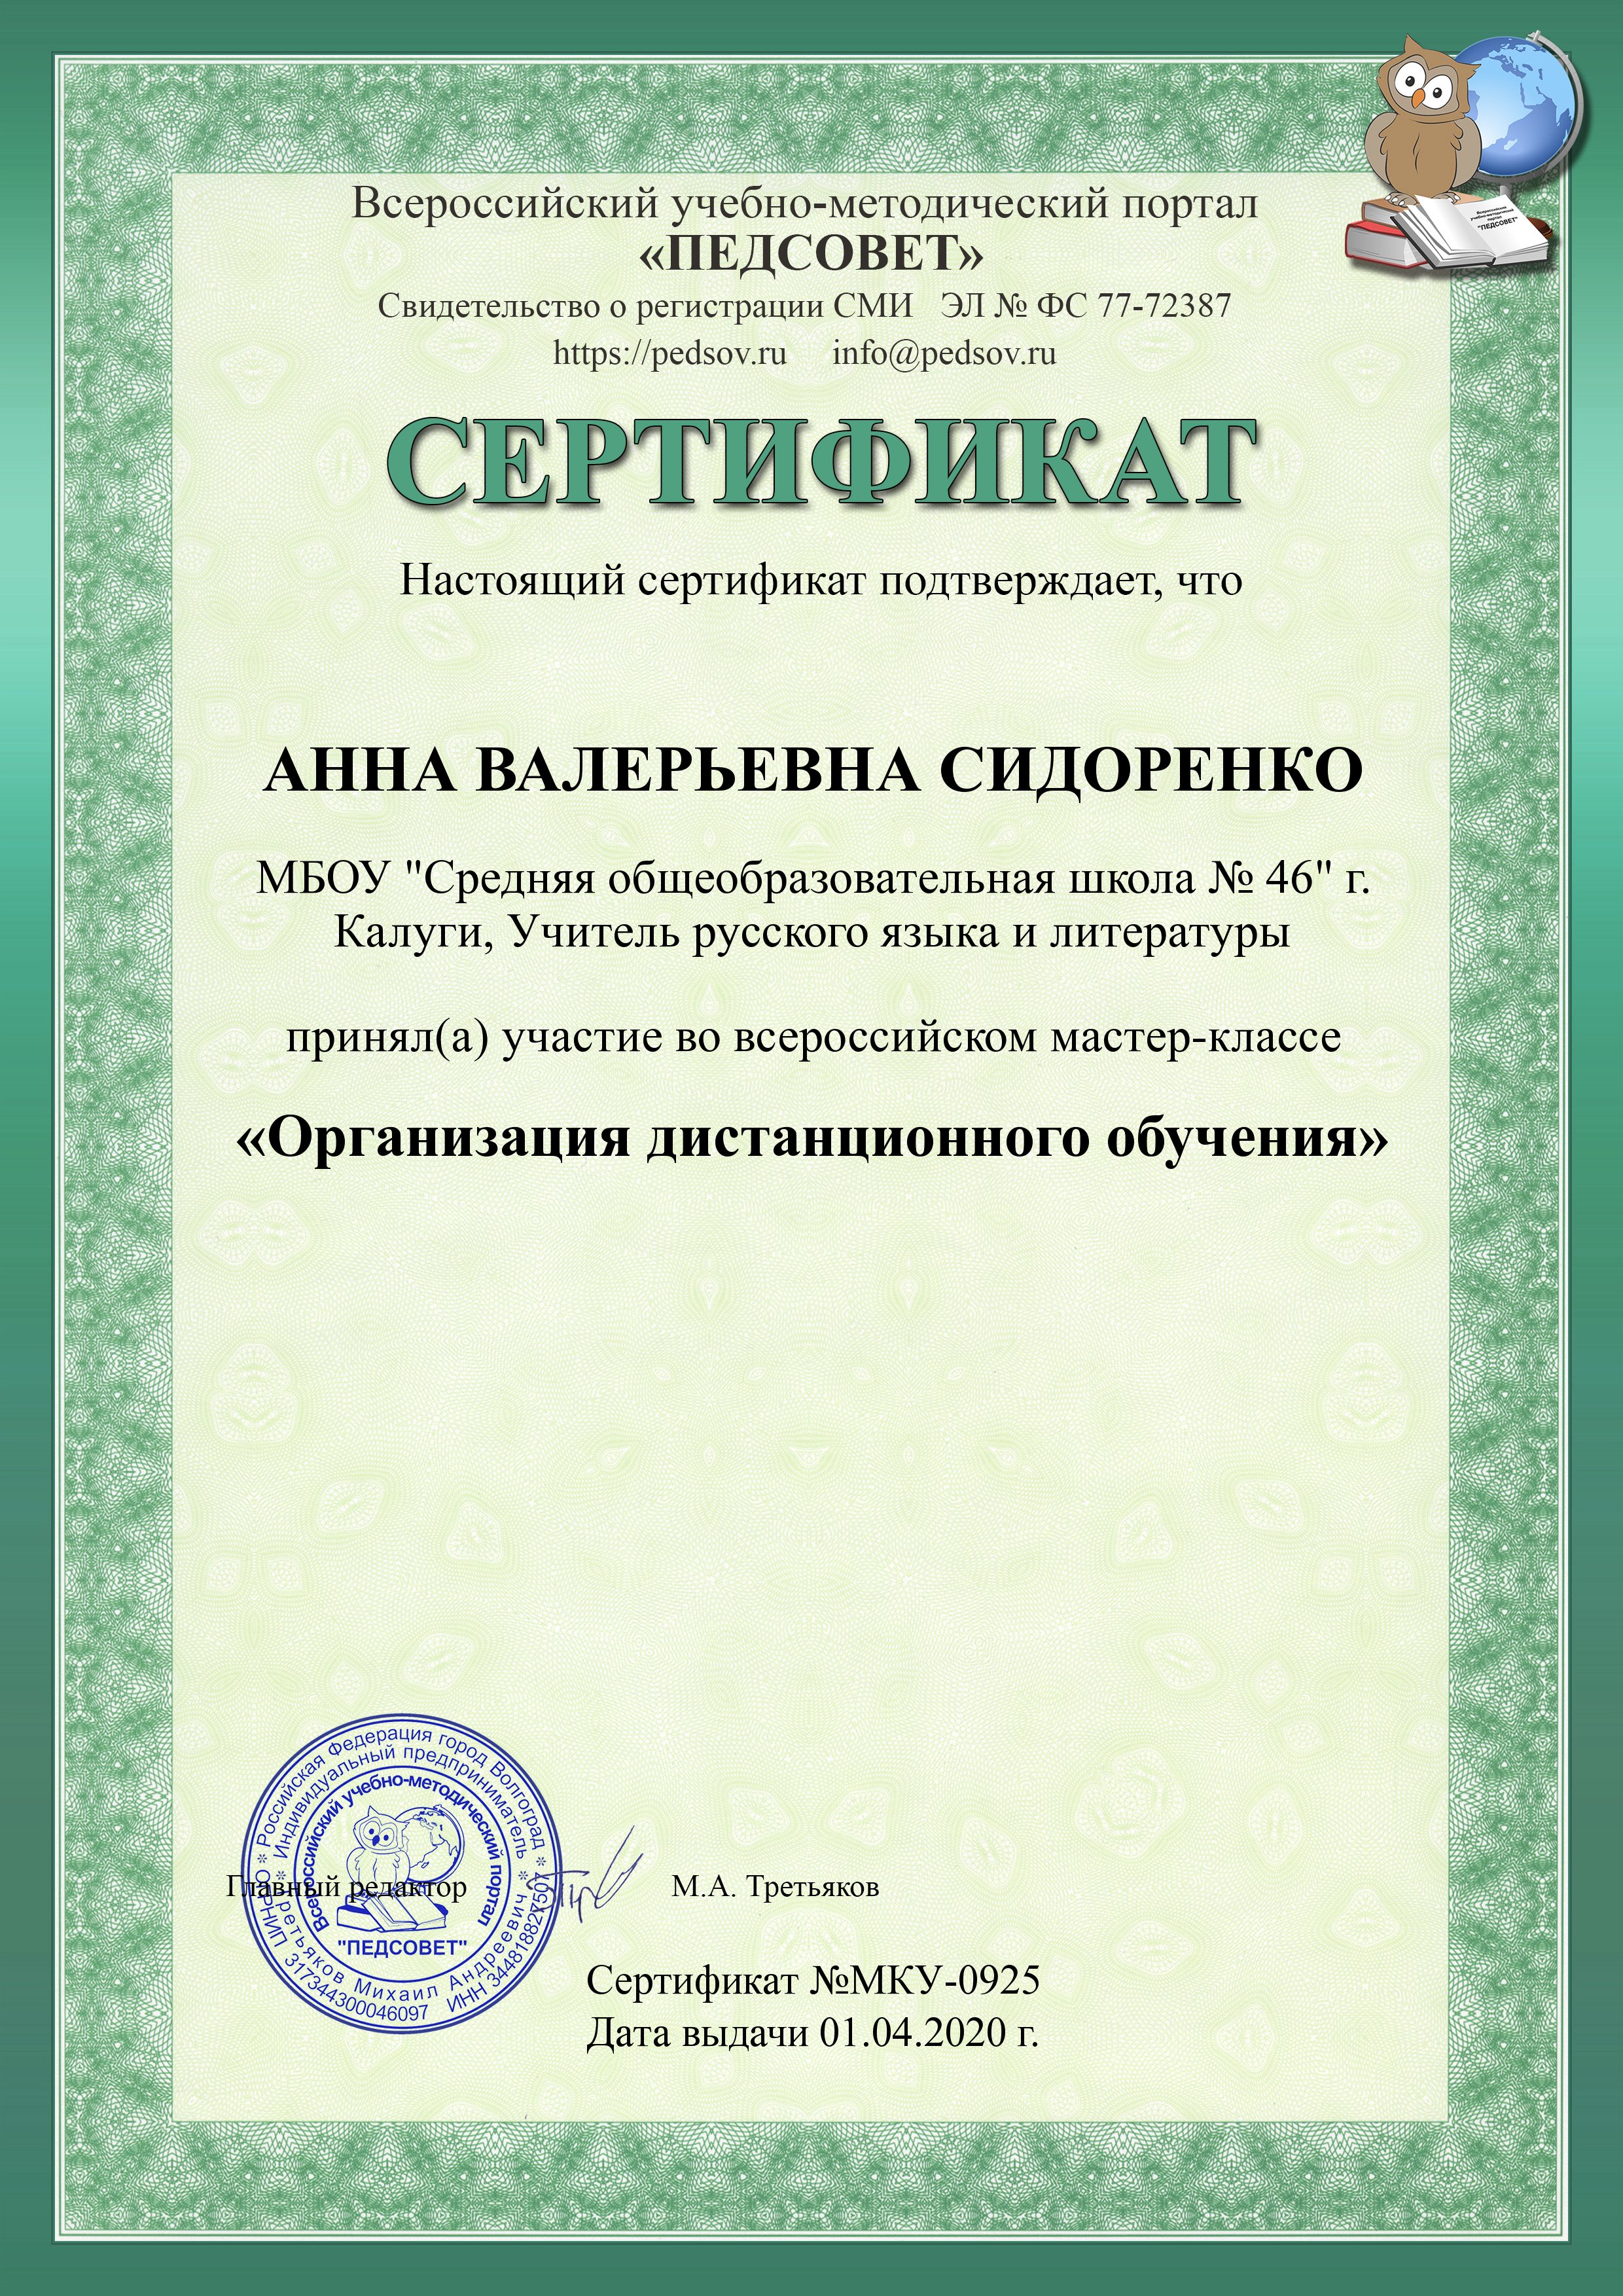 Сертификат «Организация дистанционного обучения»